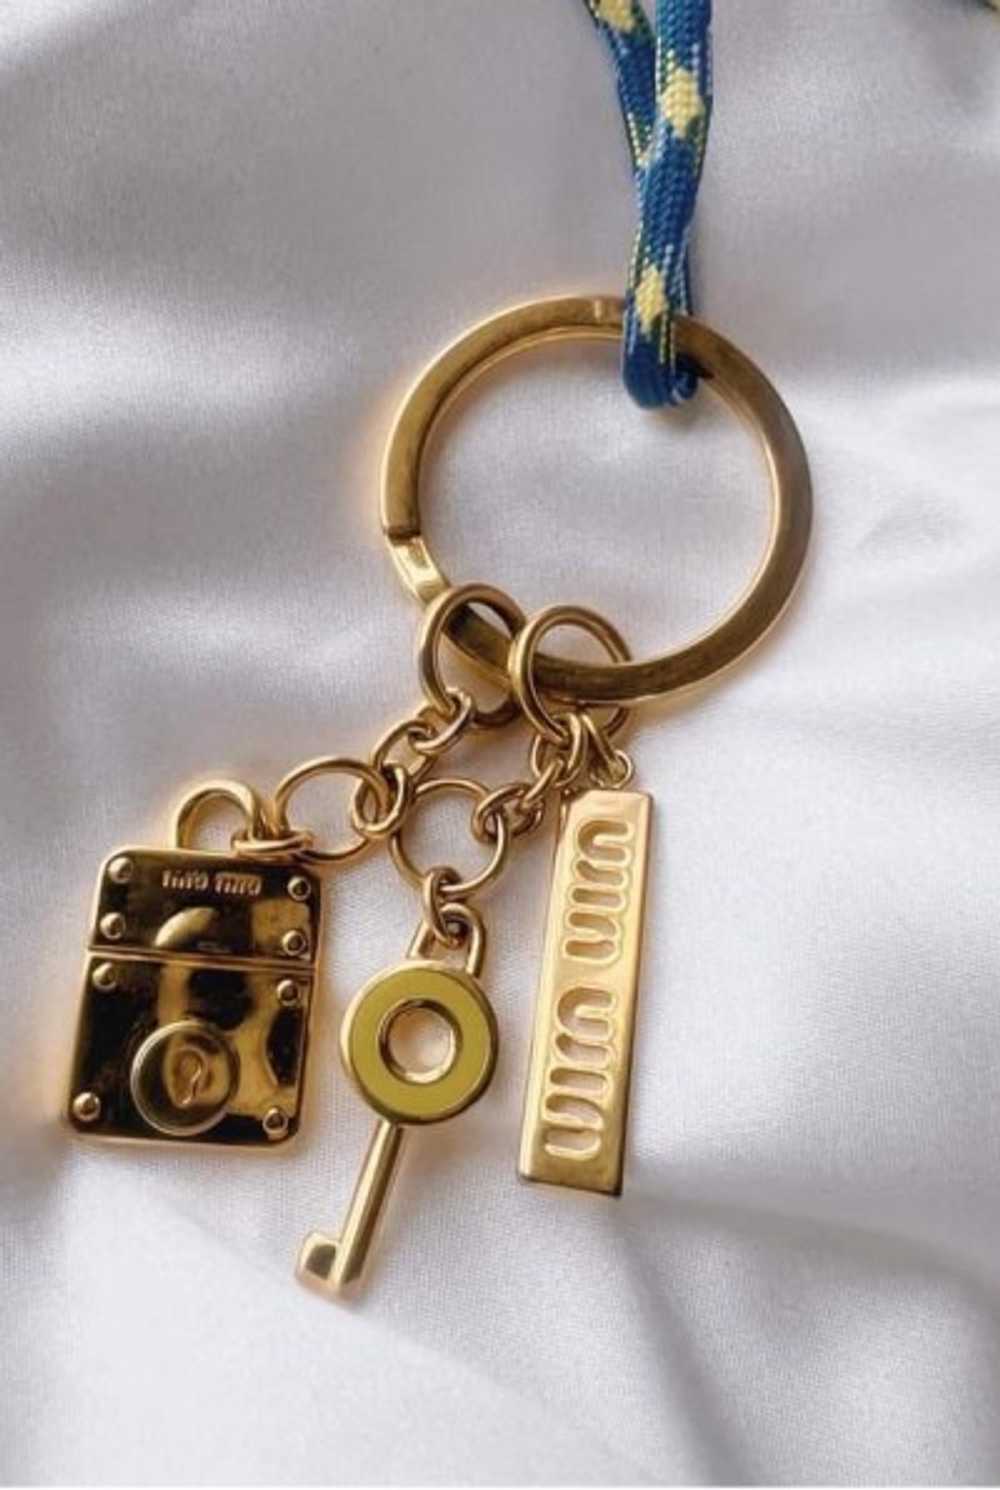 authentic Miu Miu key chain charm - image 2